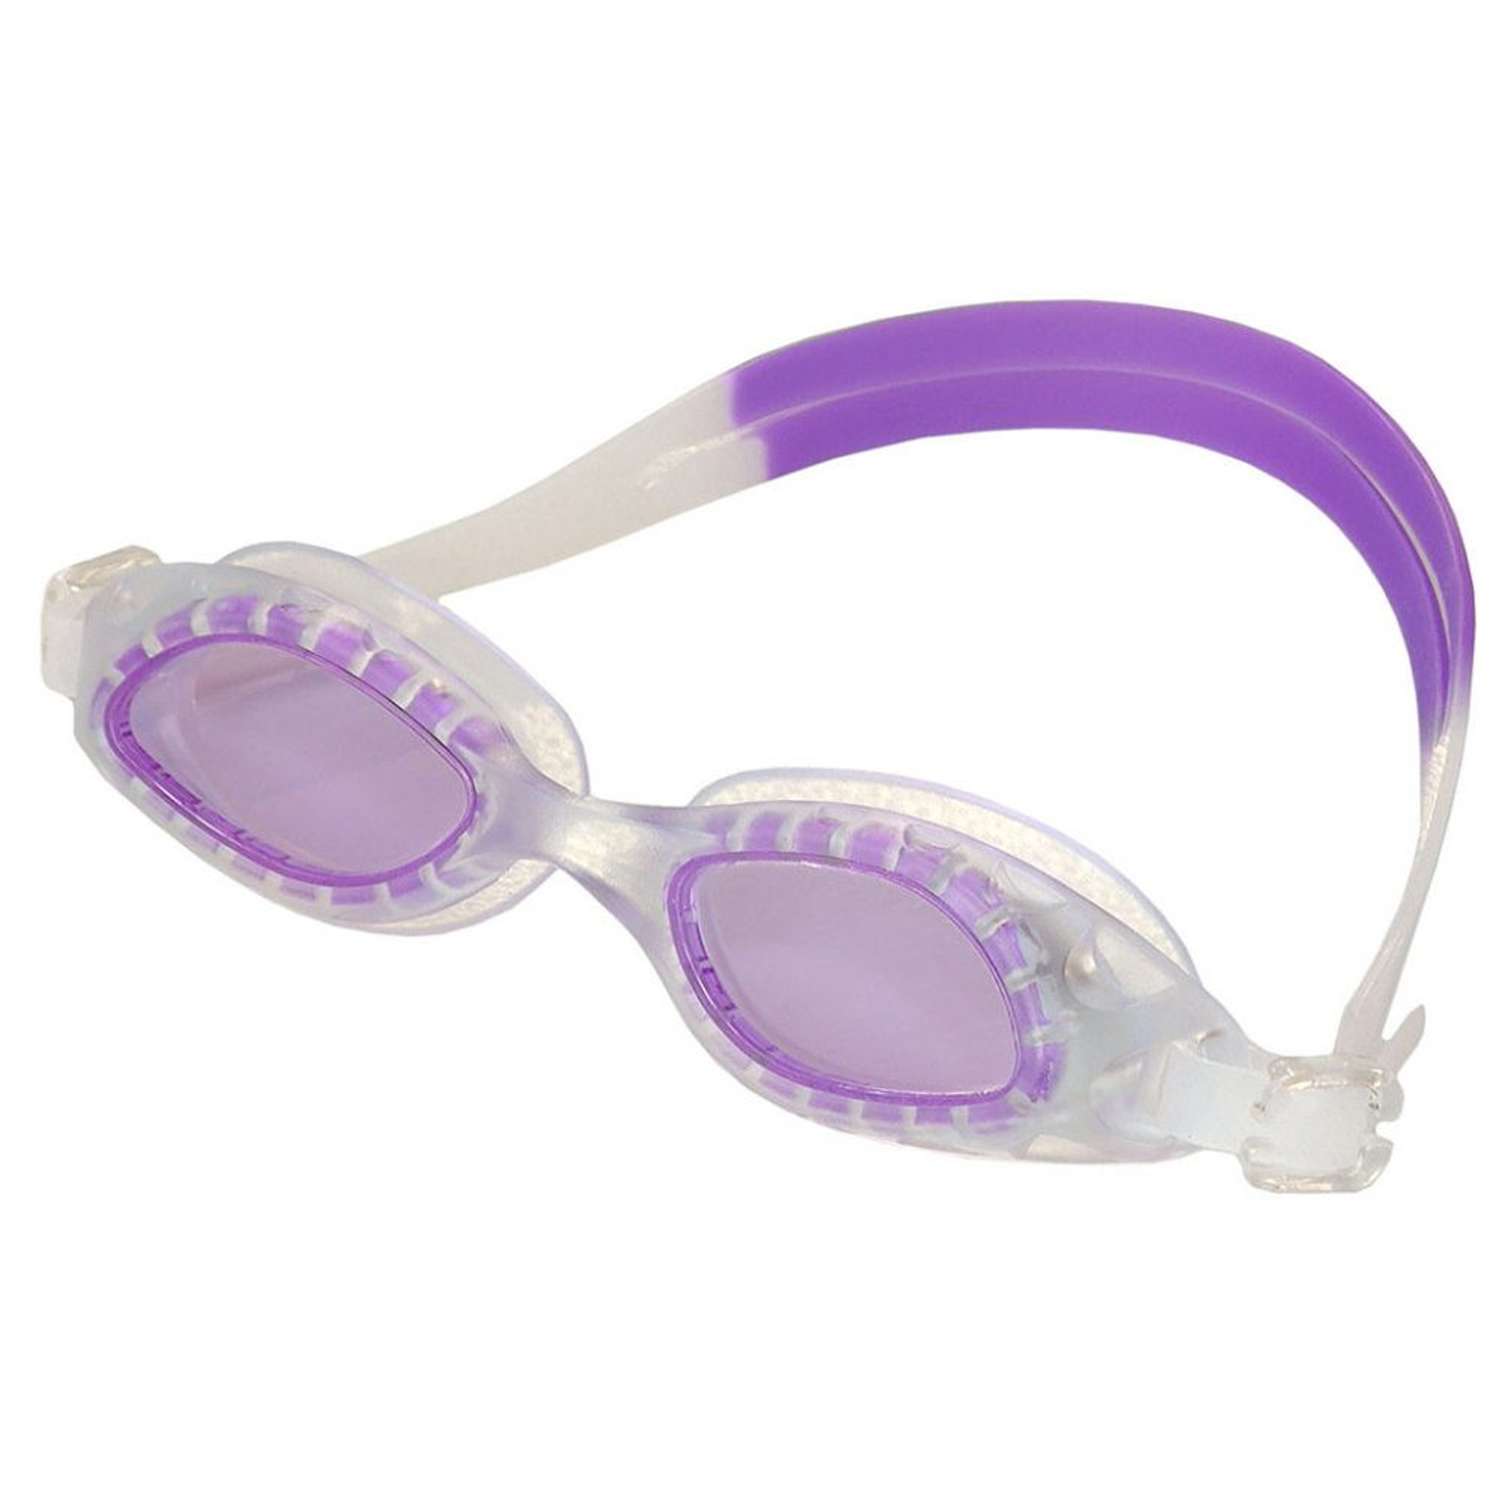 Очки для плавания Hawk E36858-7 детские фиолетовые - фото 1